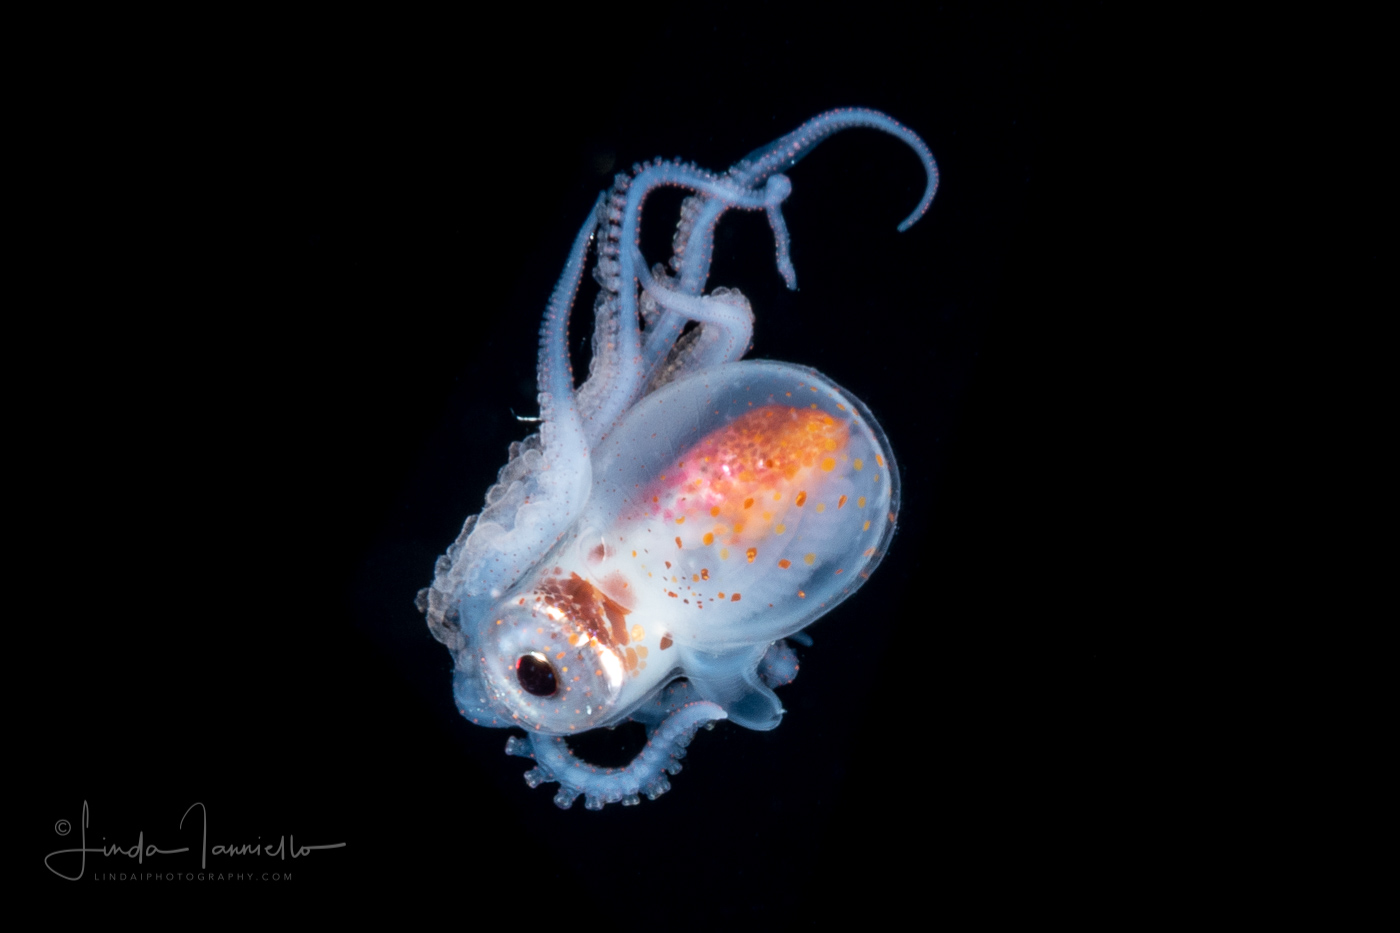 Blanket Octopus - Tremoctopus violaceus - Female